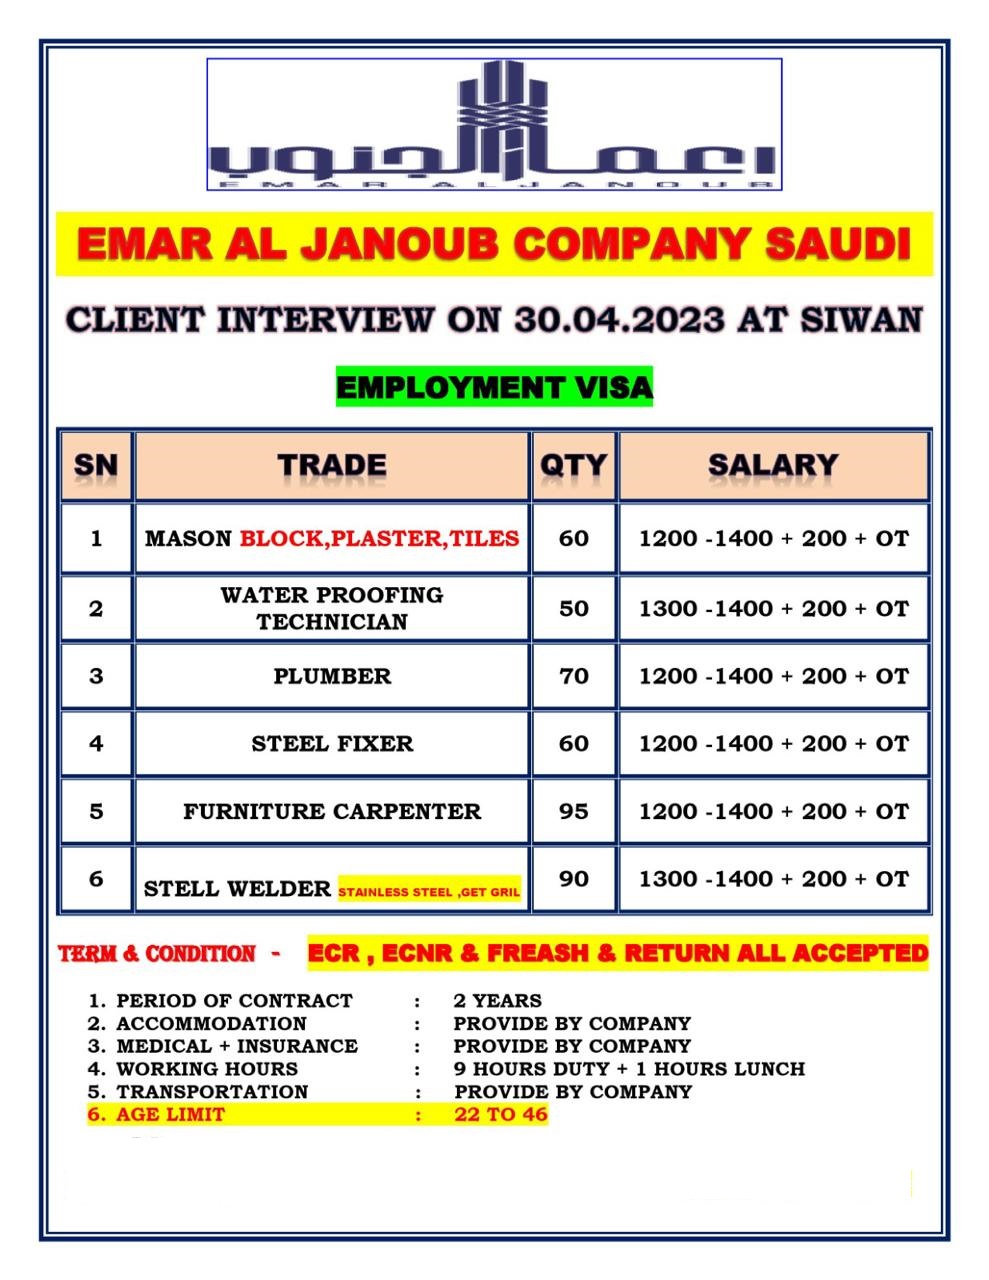 Saudi Arabia / India - Alfanar - Many Job Vacancies - Interview